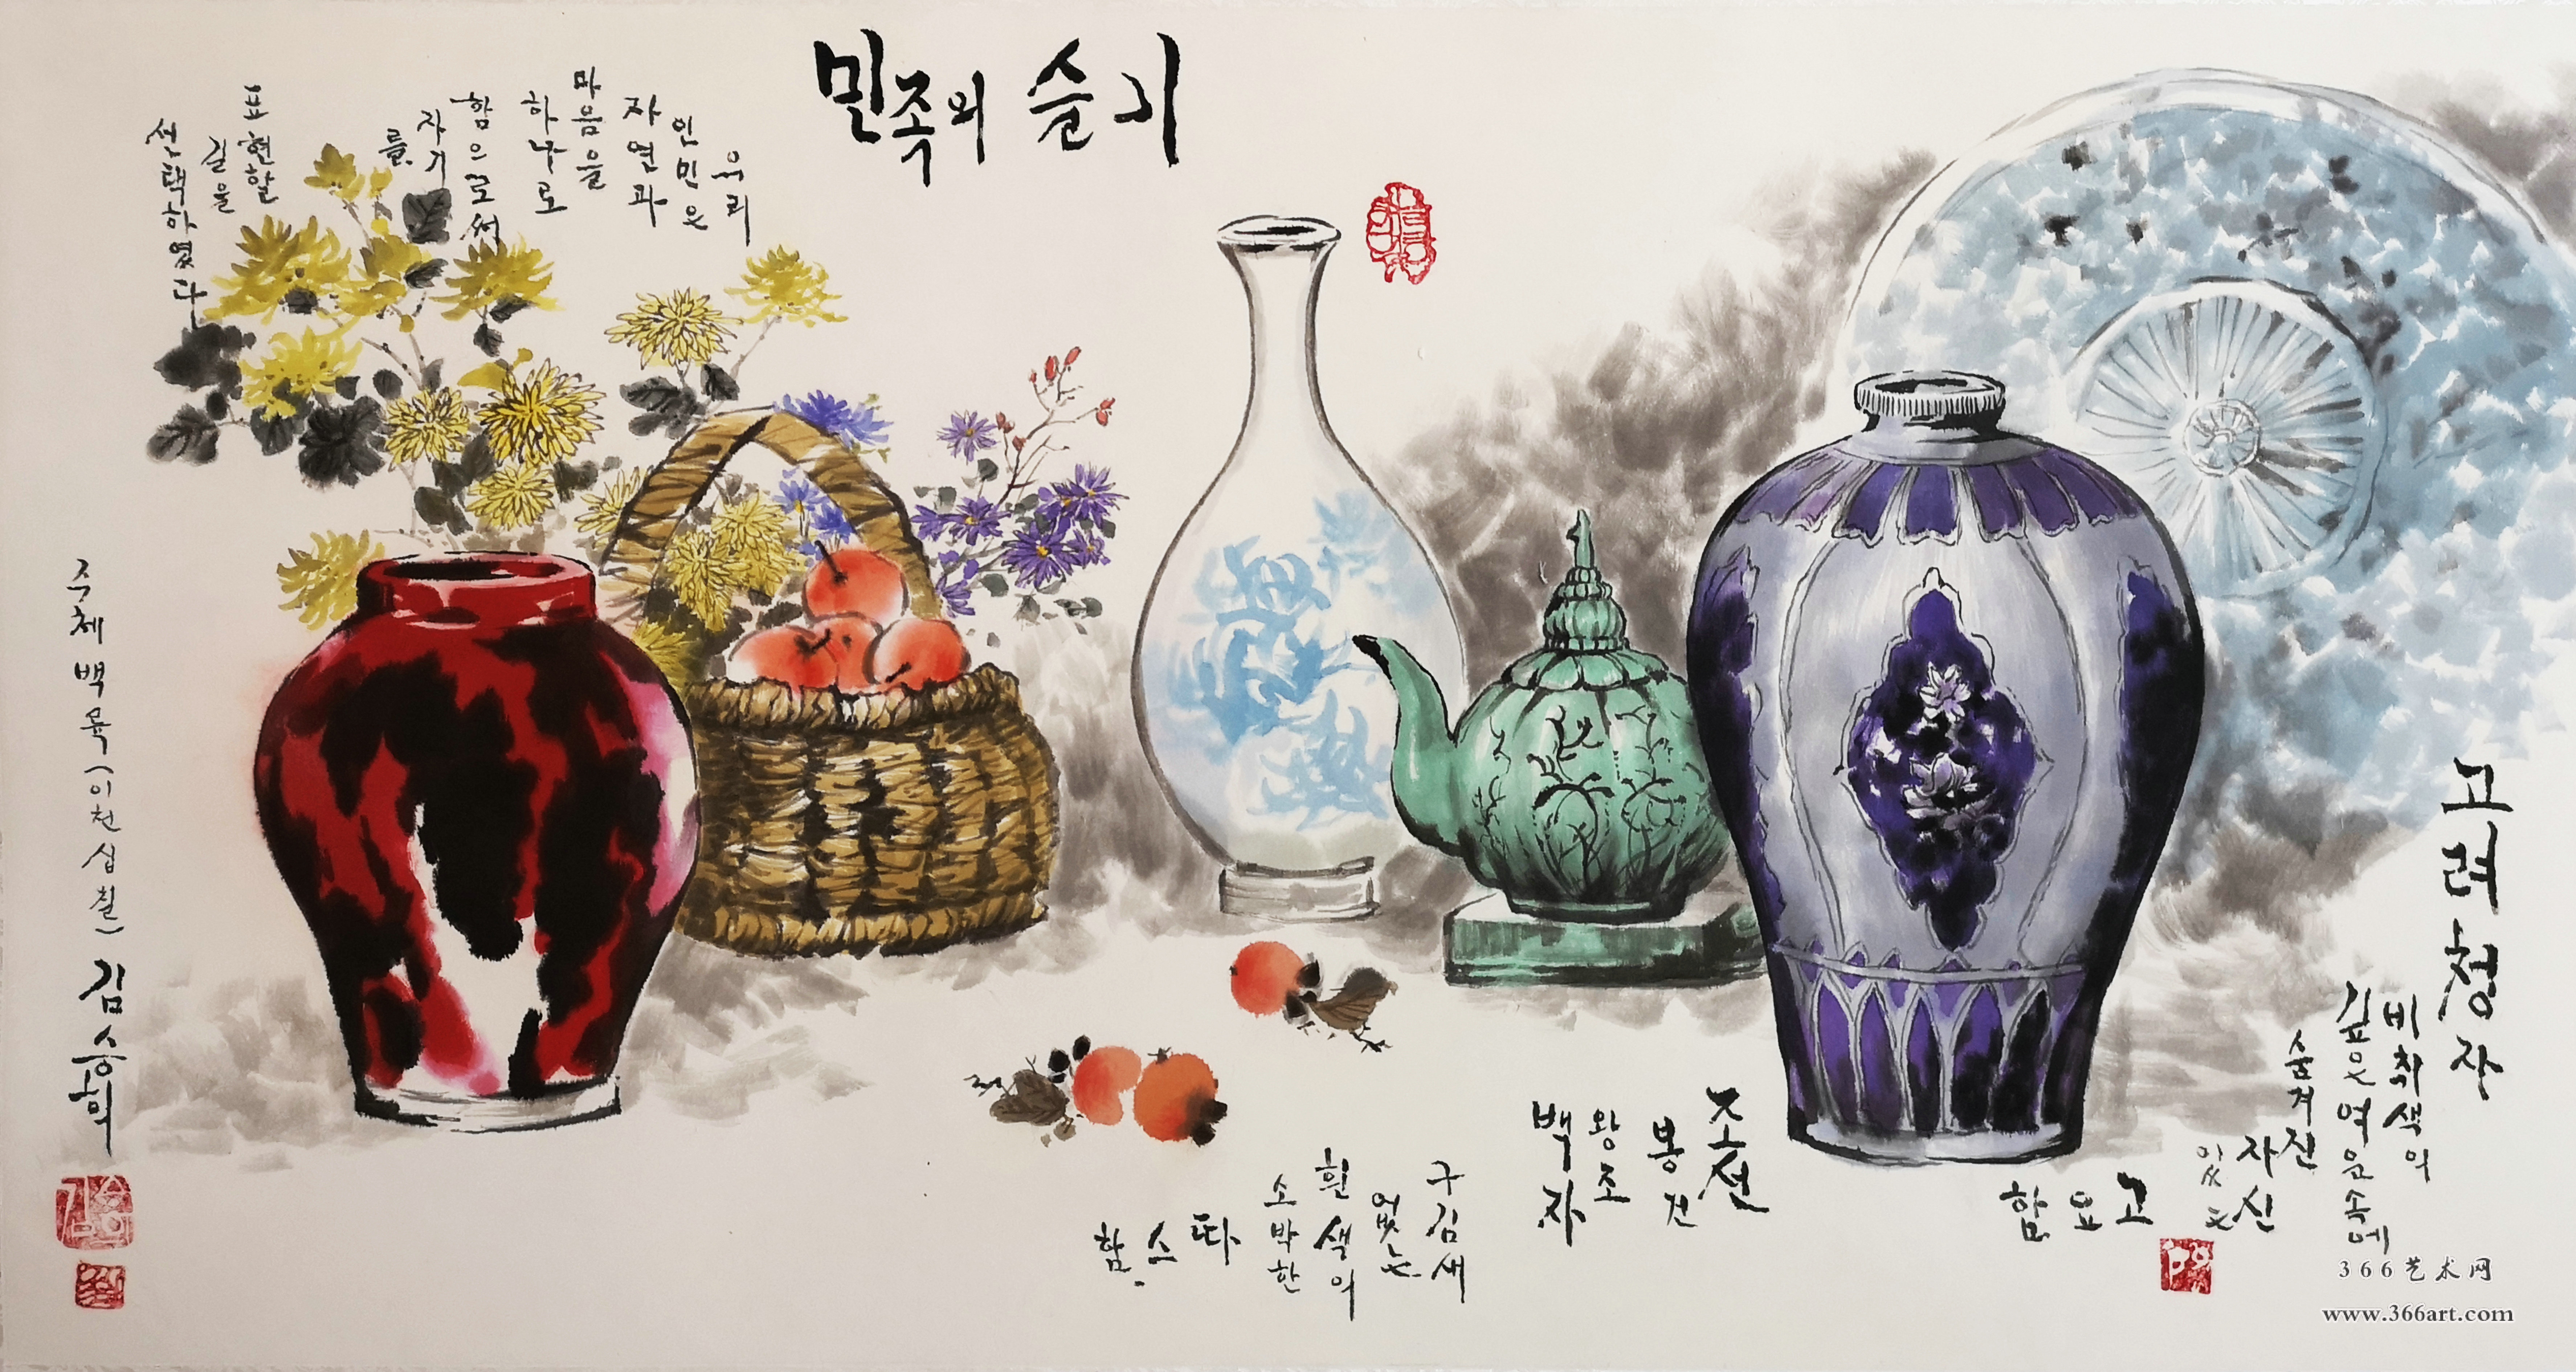 【朝鲜画】金承姬 瓷器静物 110 x 61cm